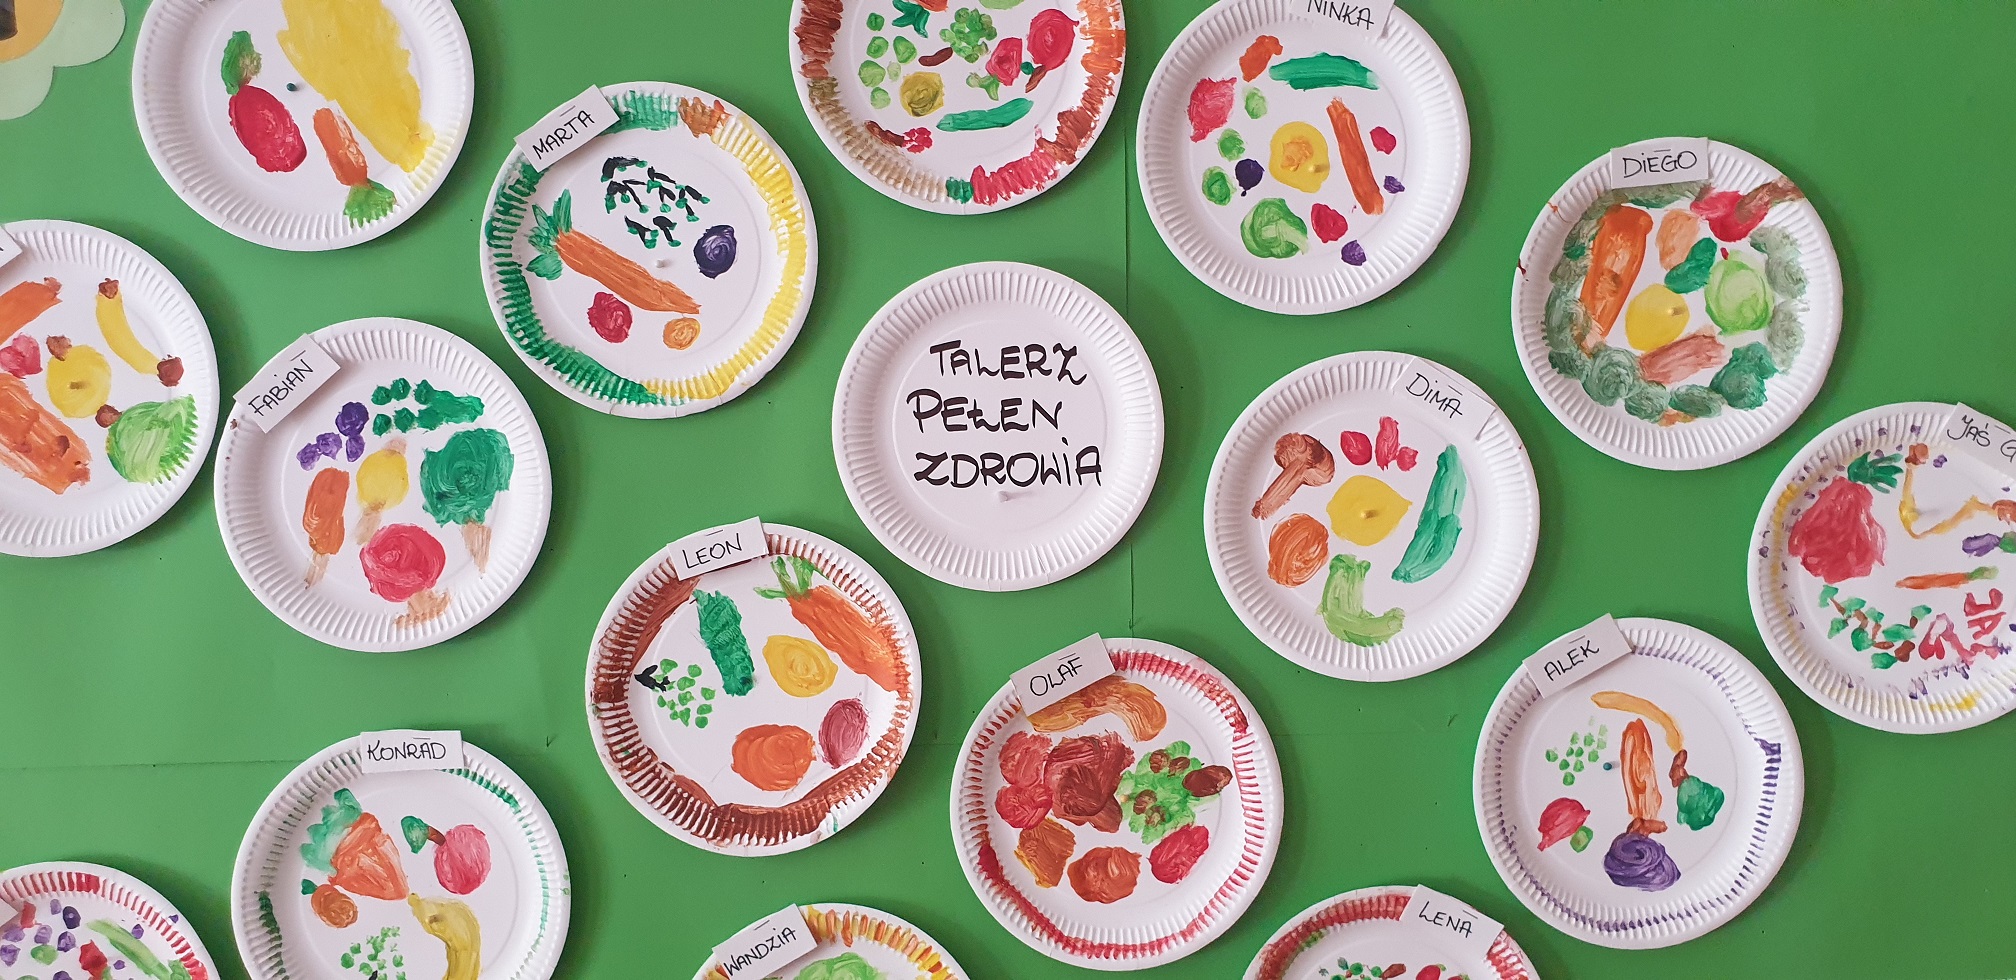 Zdjęcie przedstawia prace plastyczne dzieci - papierowe talerzyki z namalowanymi farbami owocami i warzywami.